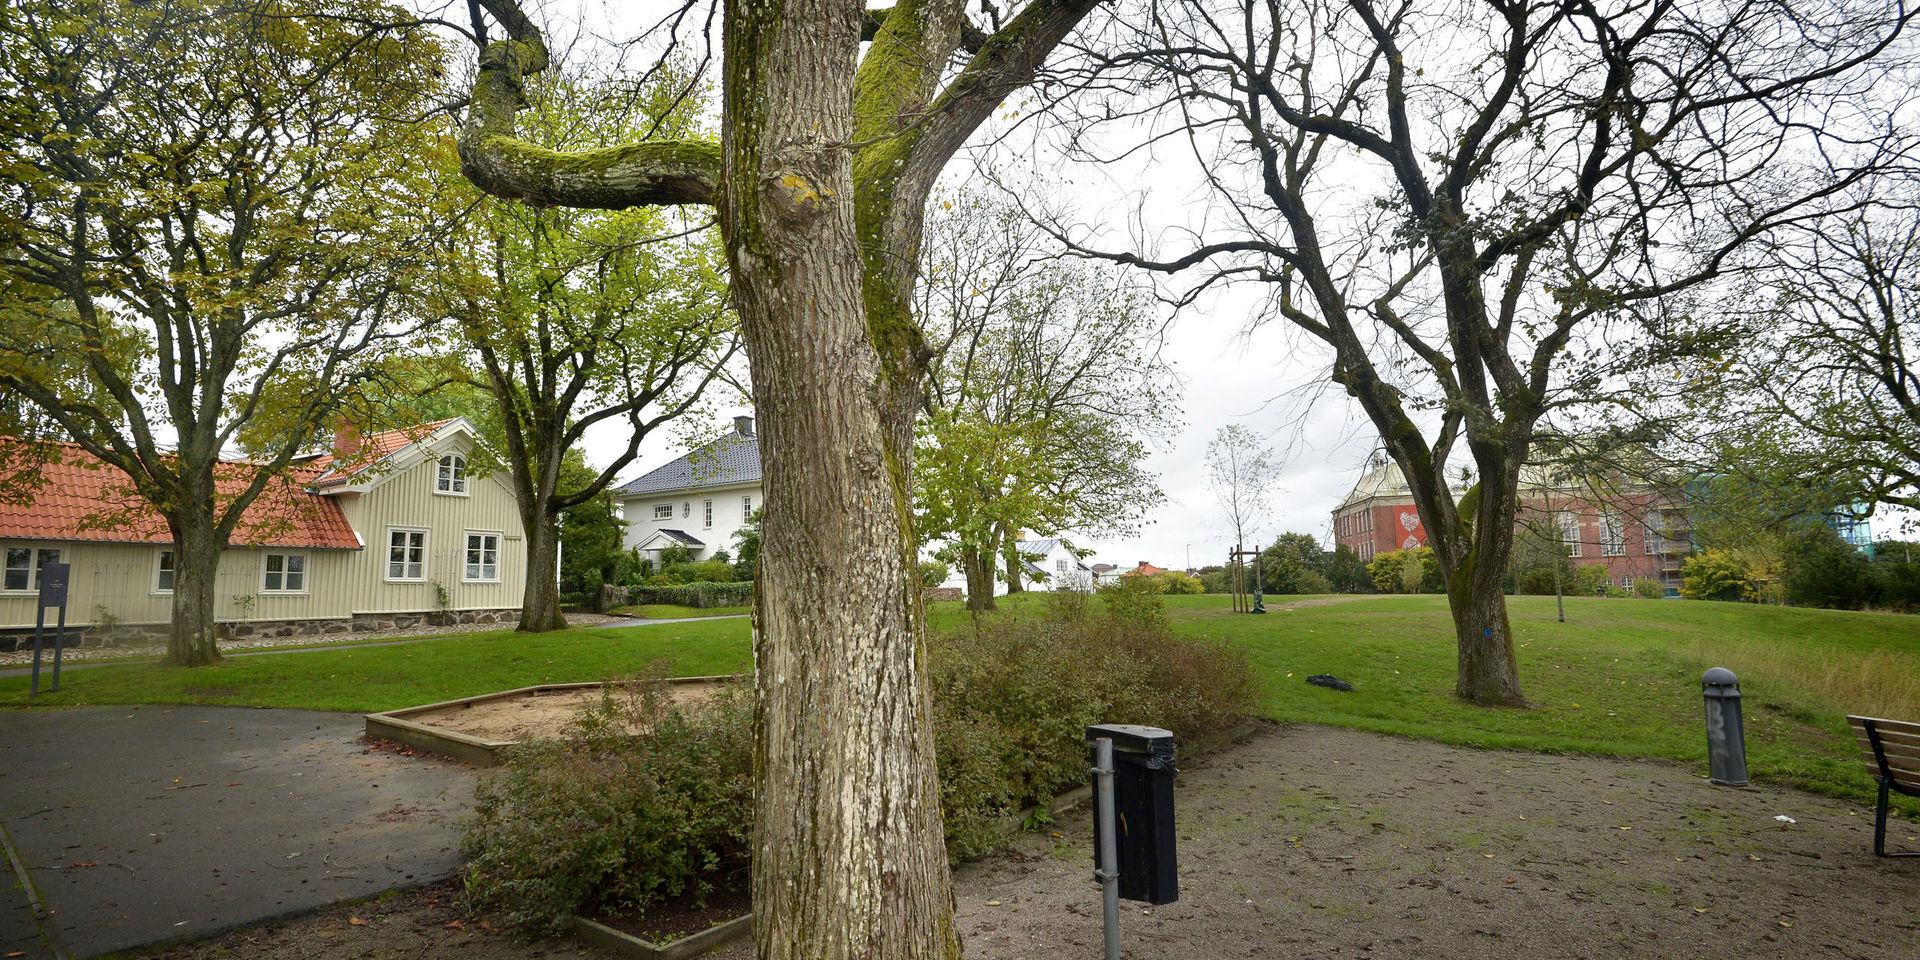 Almsjuka är en av orsakerna till att träd i stadsmiljö fälls. Bilden är från Varberg i augusti 2018.